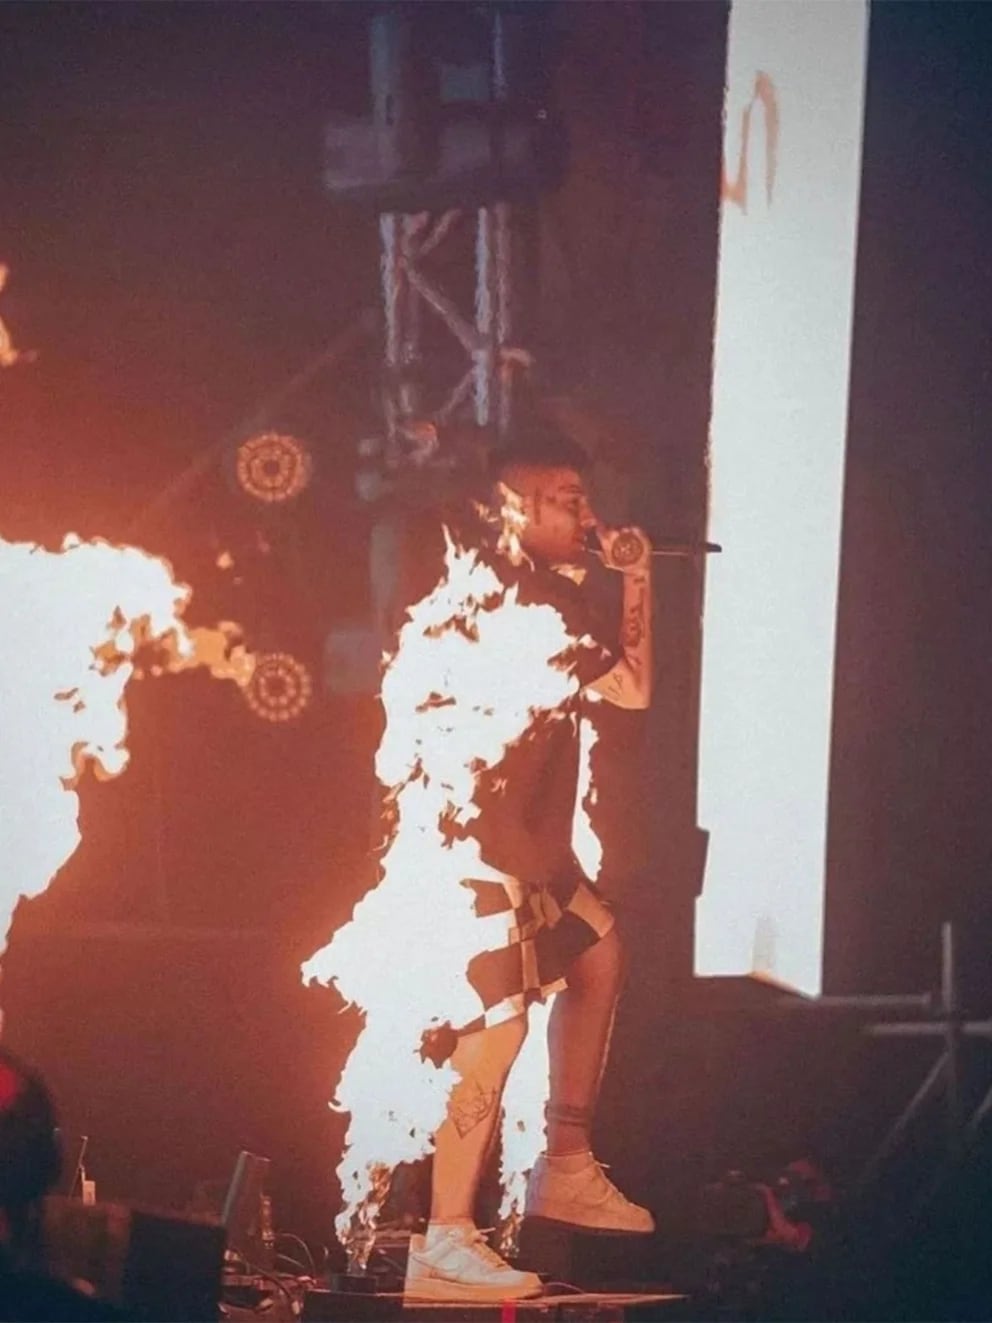 La impactante foto de Duki envuelto en llamas, en el momento en que casi se prende fuego: “Antorcha humana”